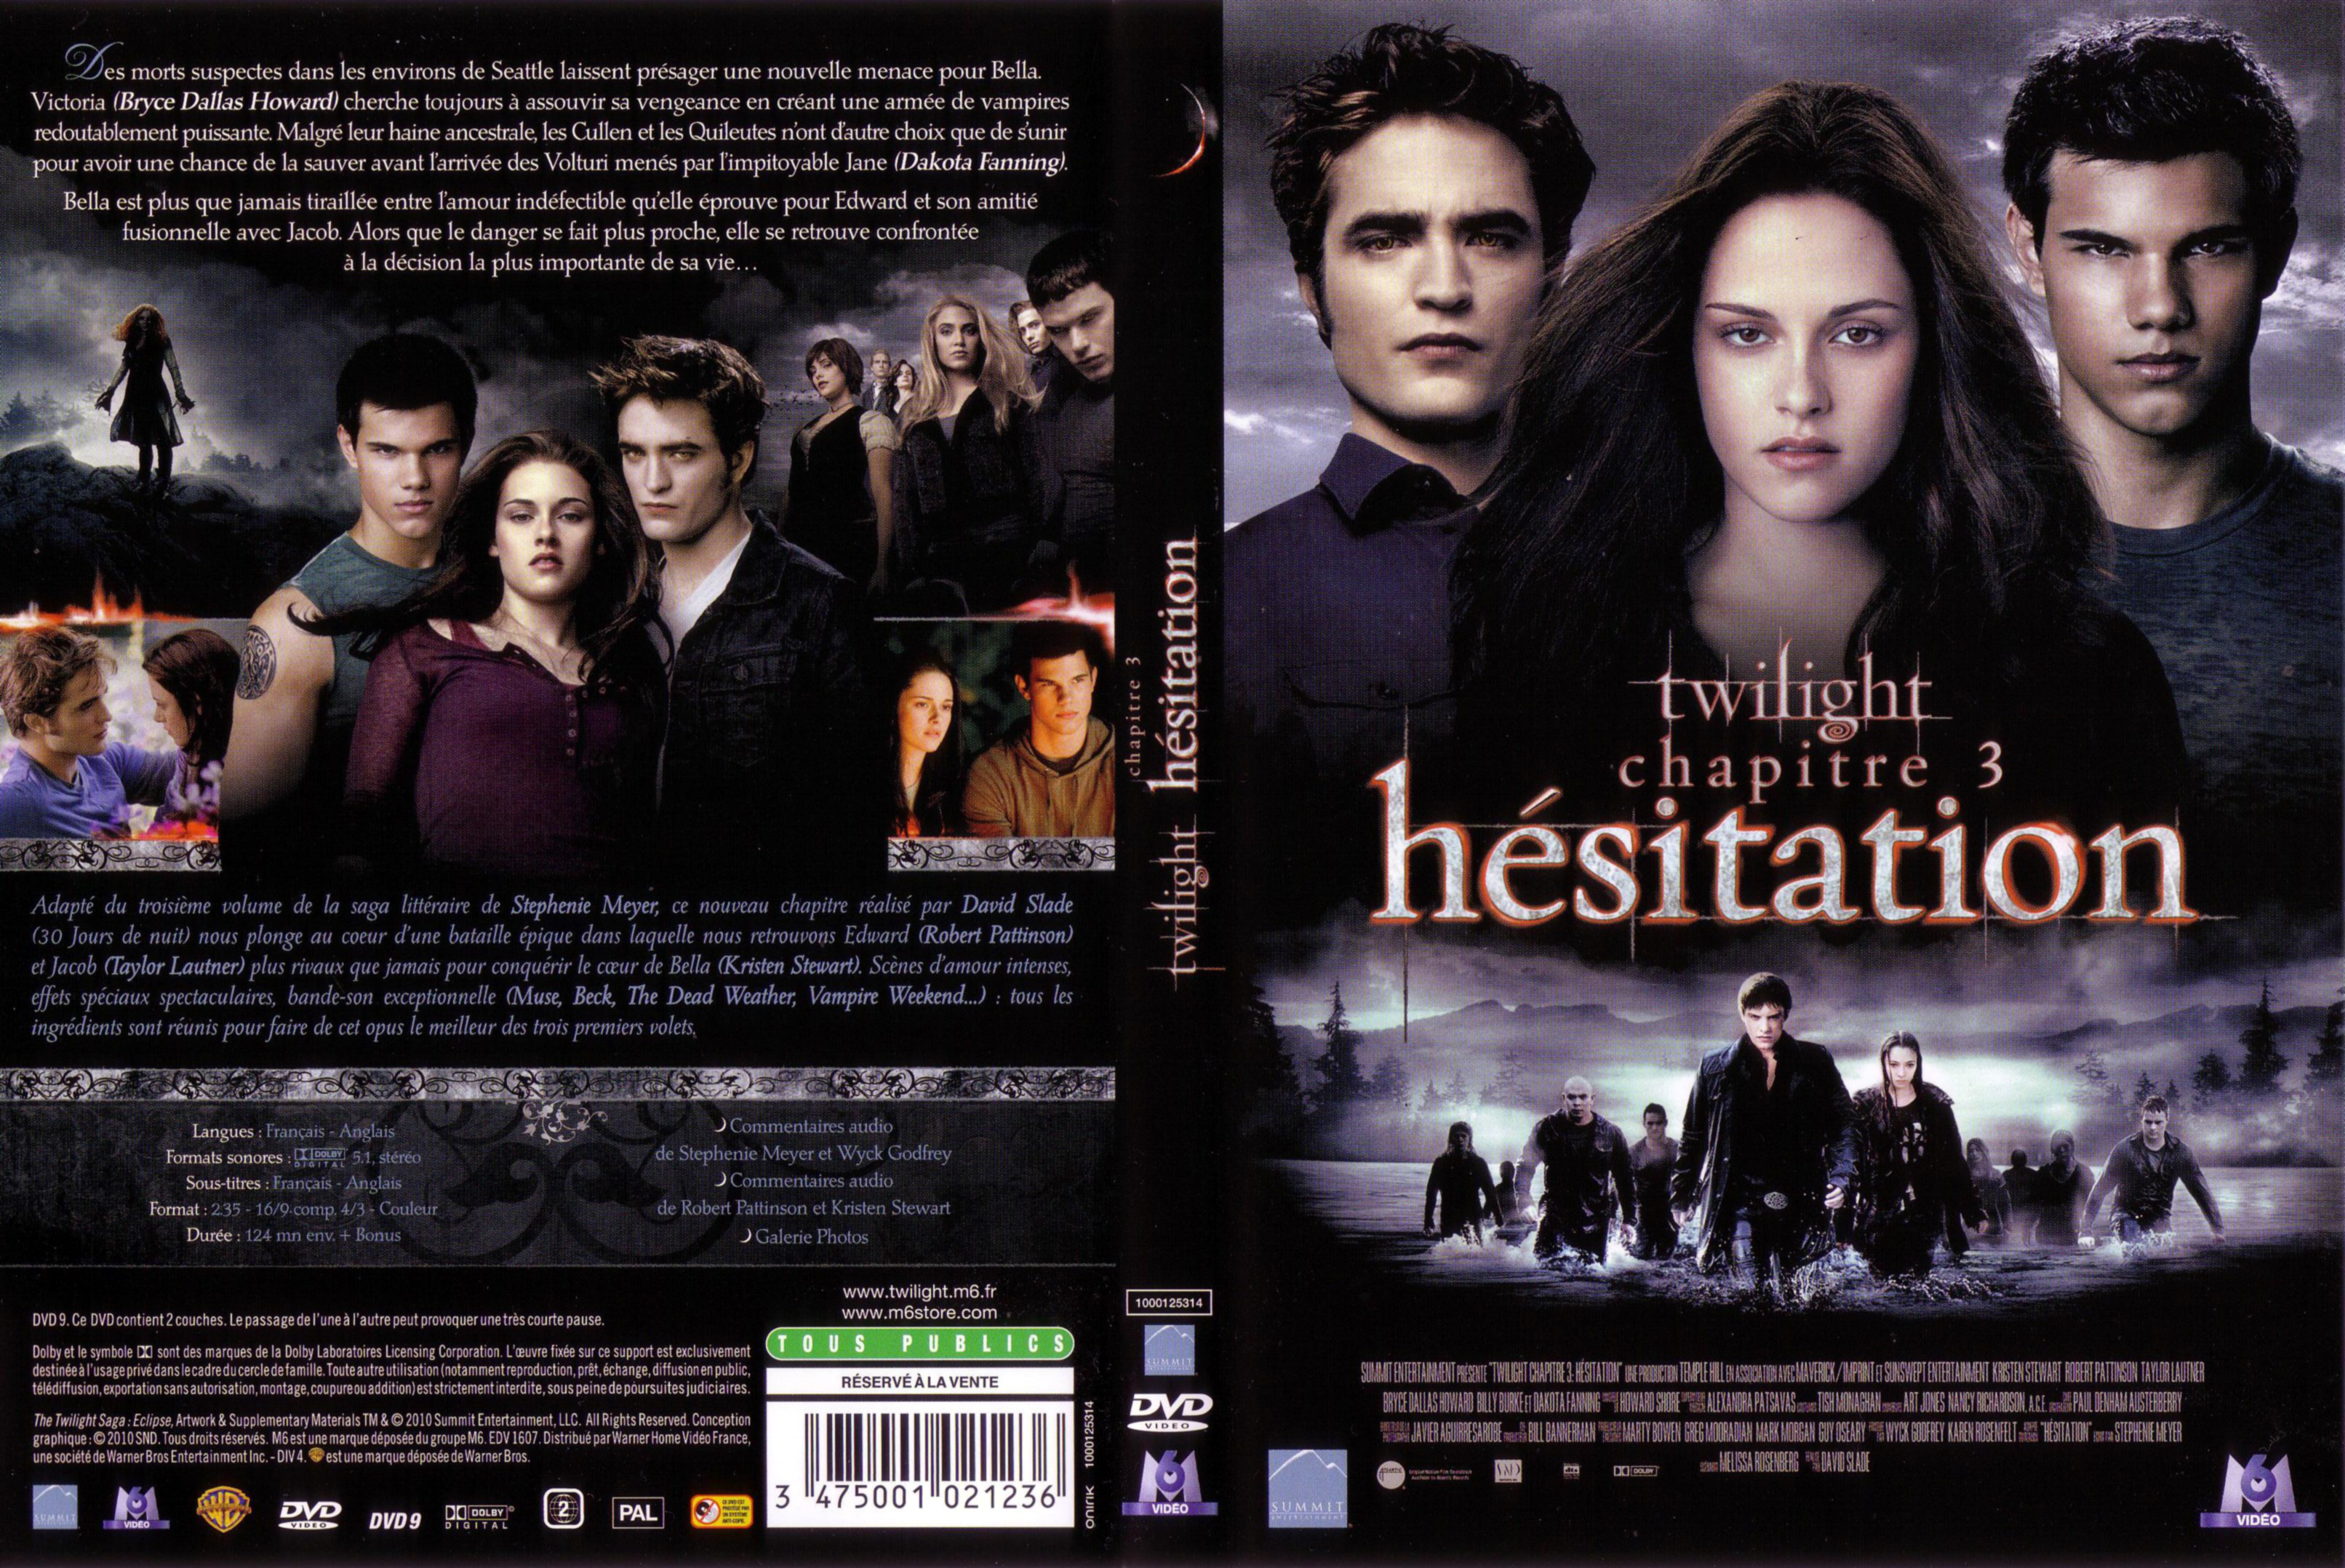 Jaquette DVD Twilight Chapitre 3 - Hesitation